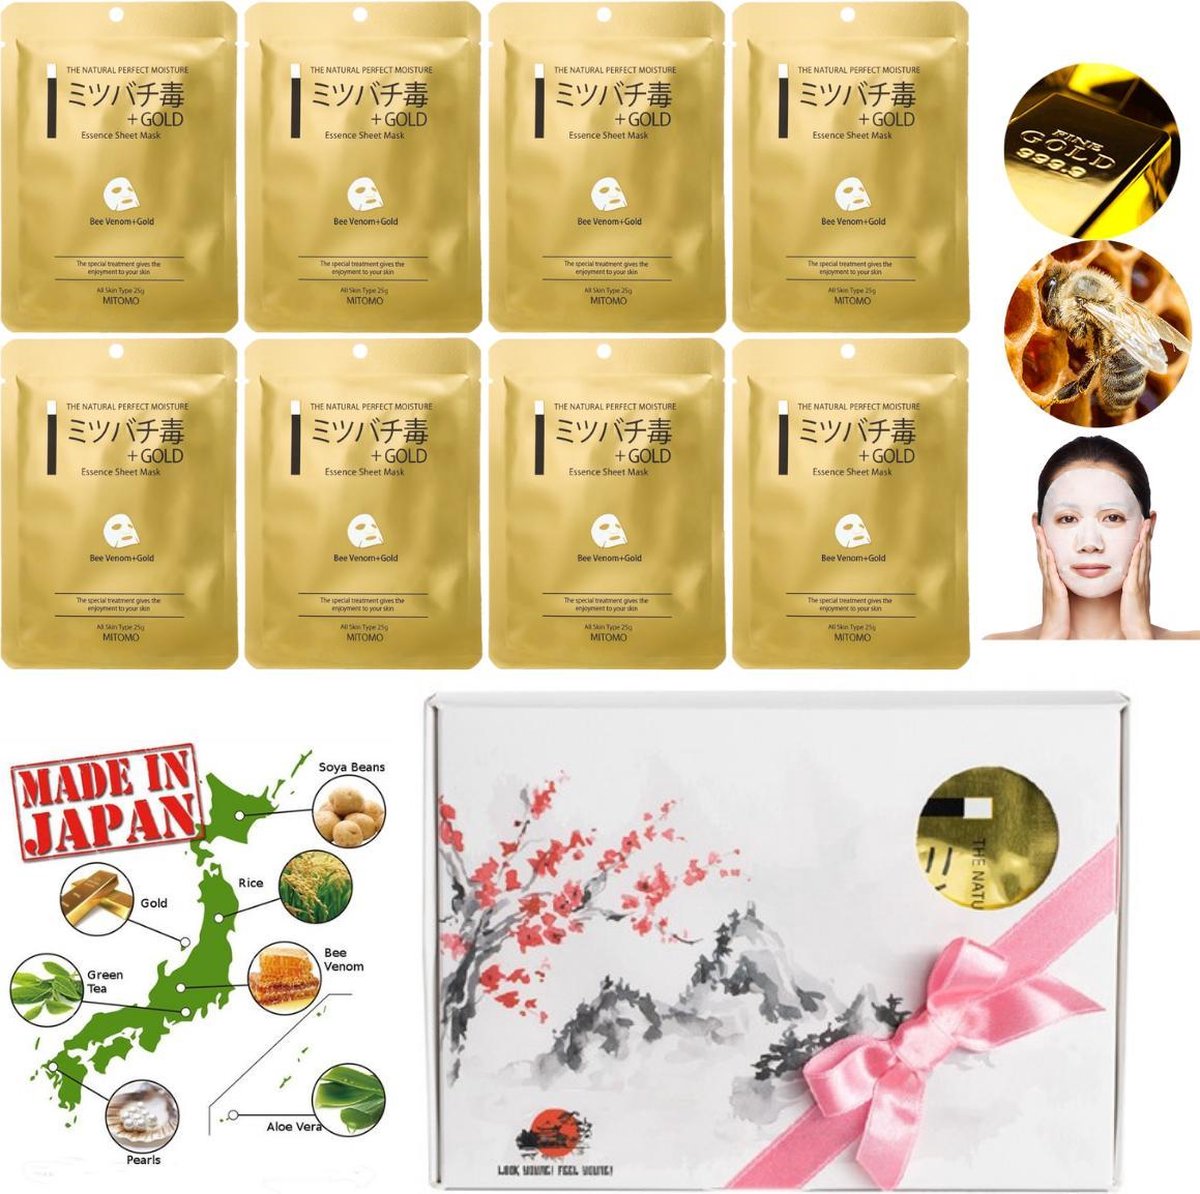 Mitomo Japan Gold & Bee Venom Beauty Face Mask Giftbox - Japanse Skincare Gezichtsmaskers met Geschenkdoos - Geschenkset Vrouwen - 8-Pack